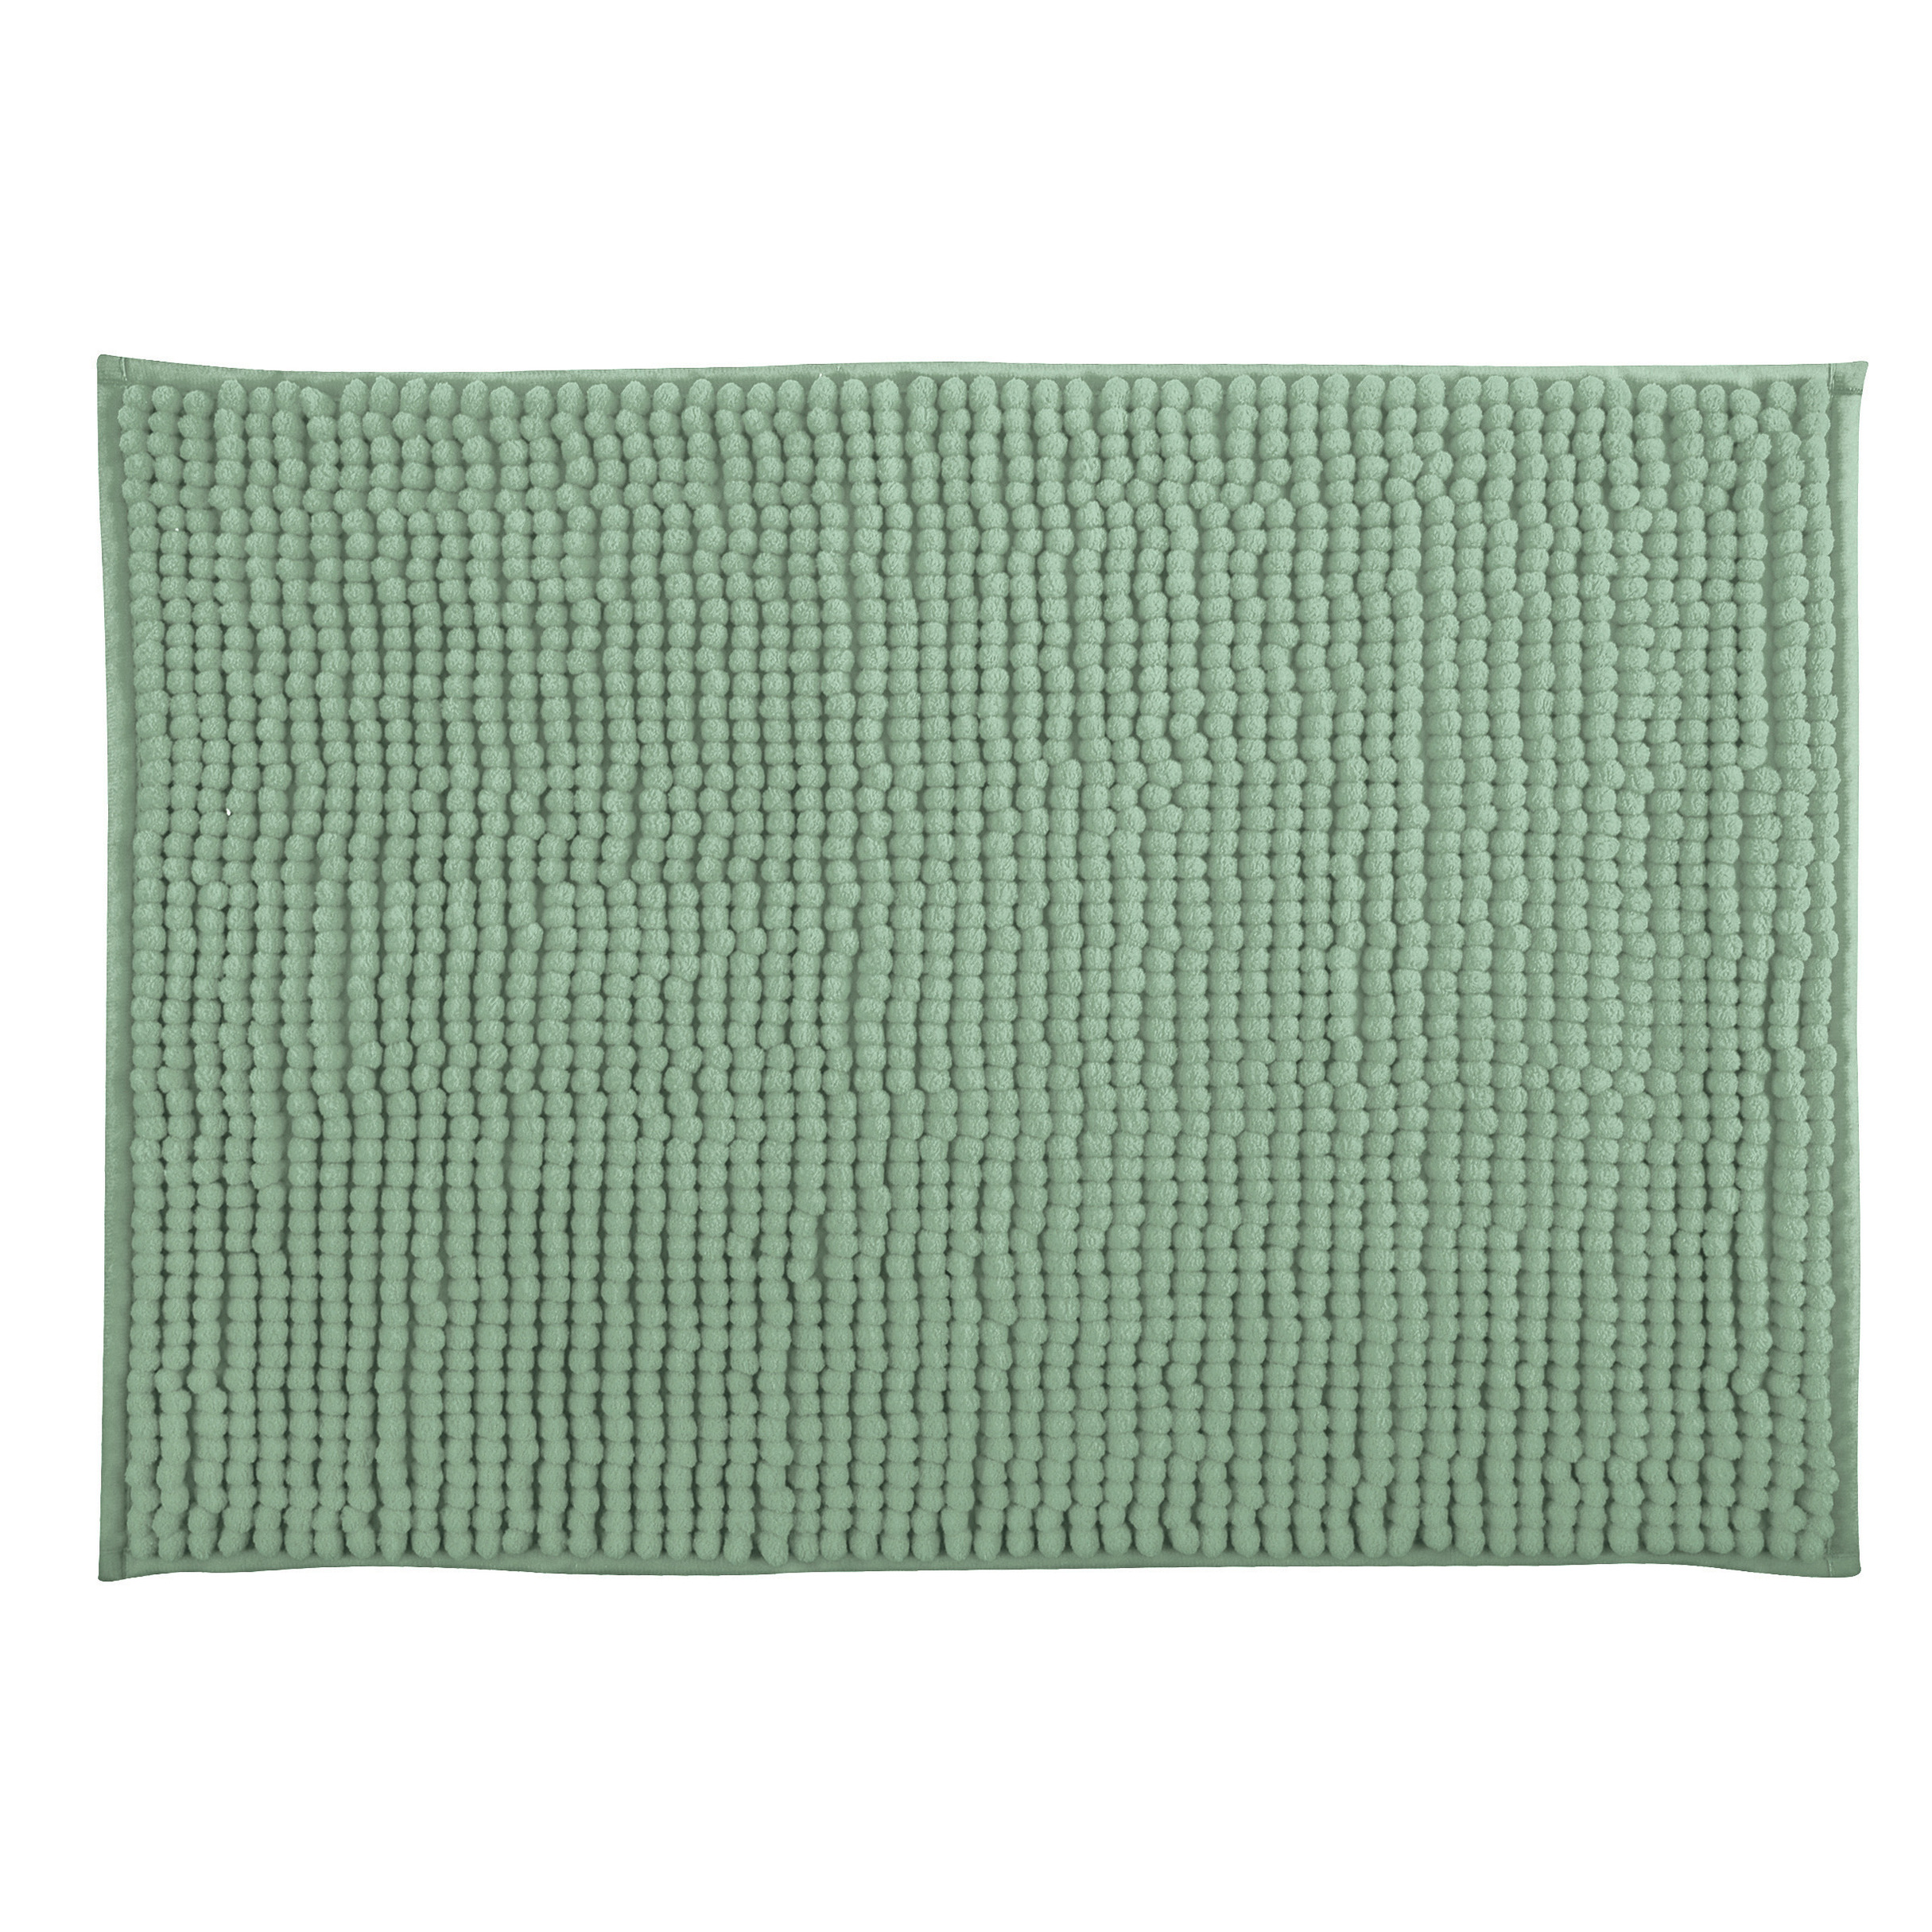 MSV Badkamerkleed-badmat tapijtje voor op de vloer groen 40 x 60 cm Microvezel